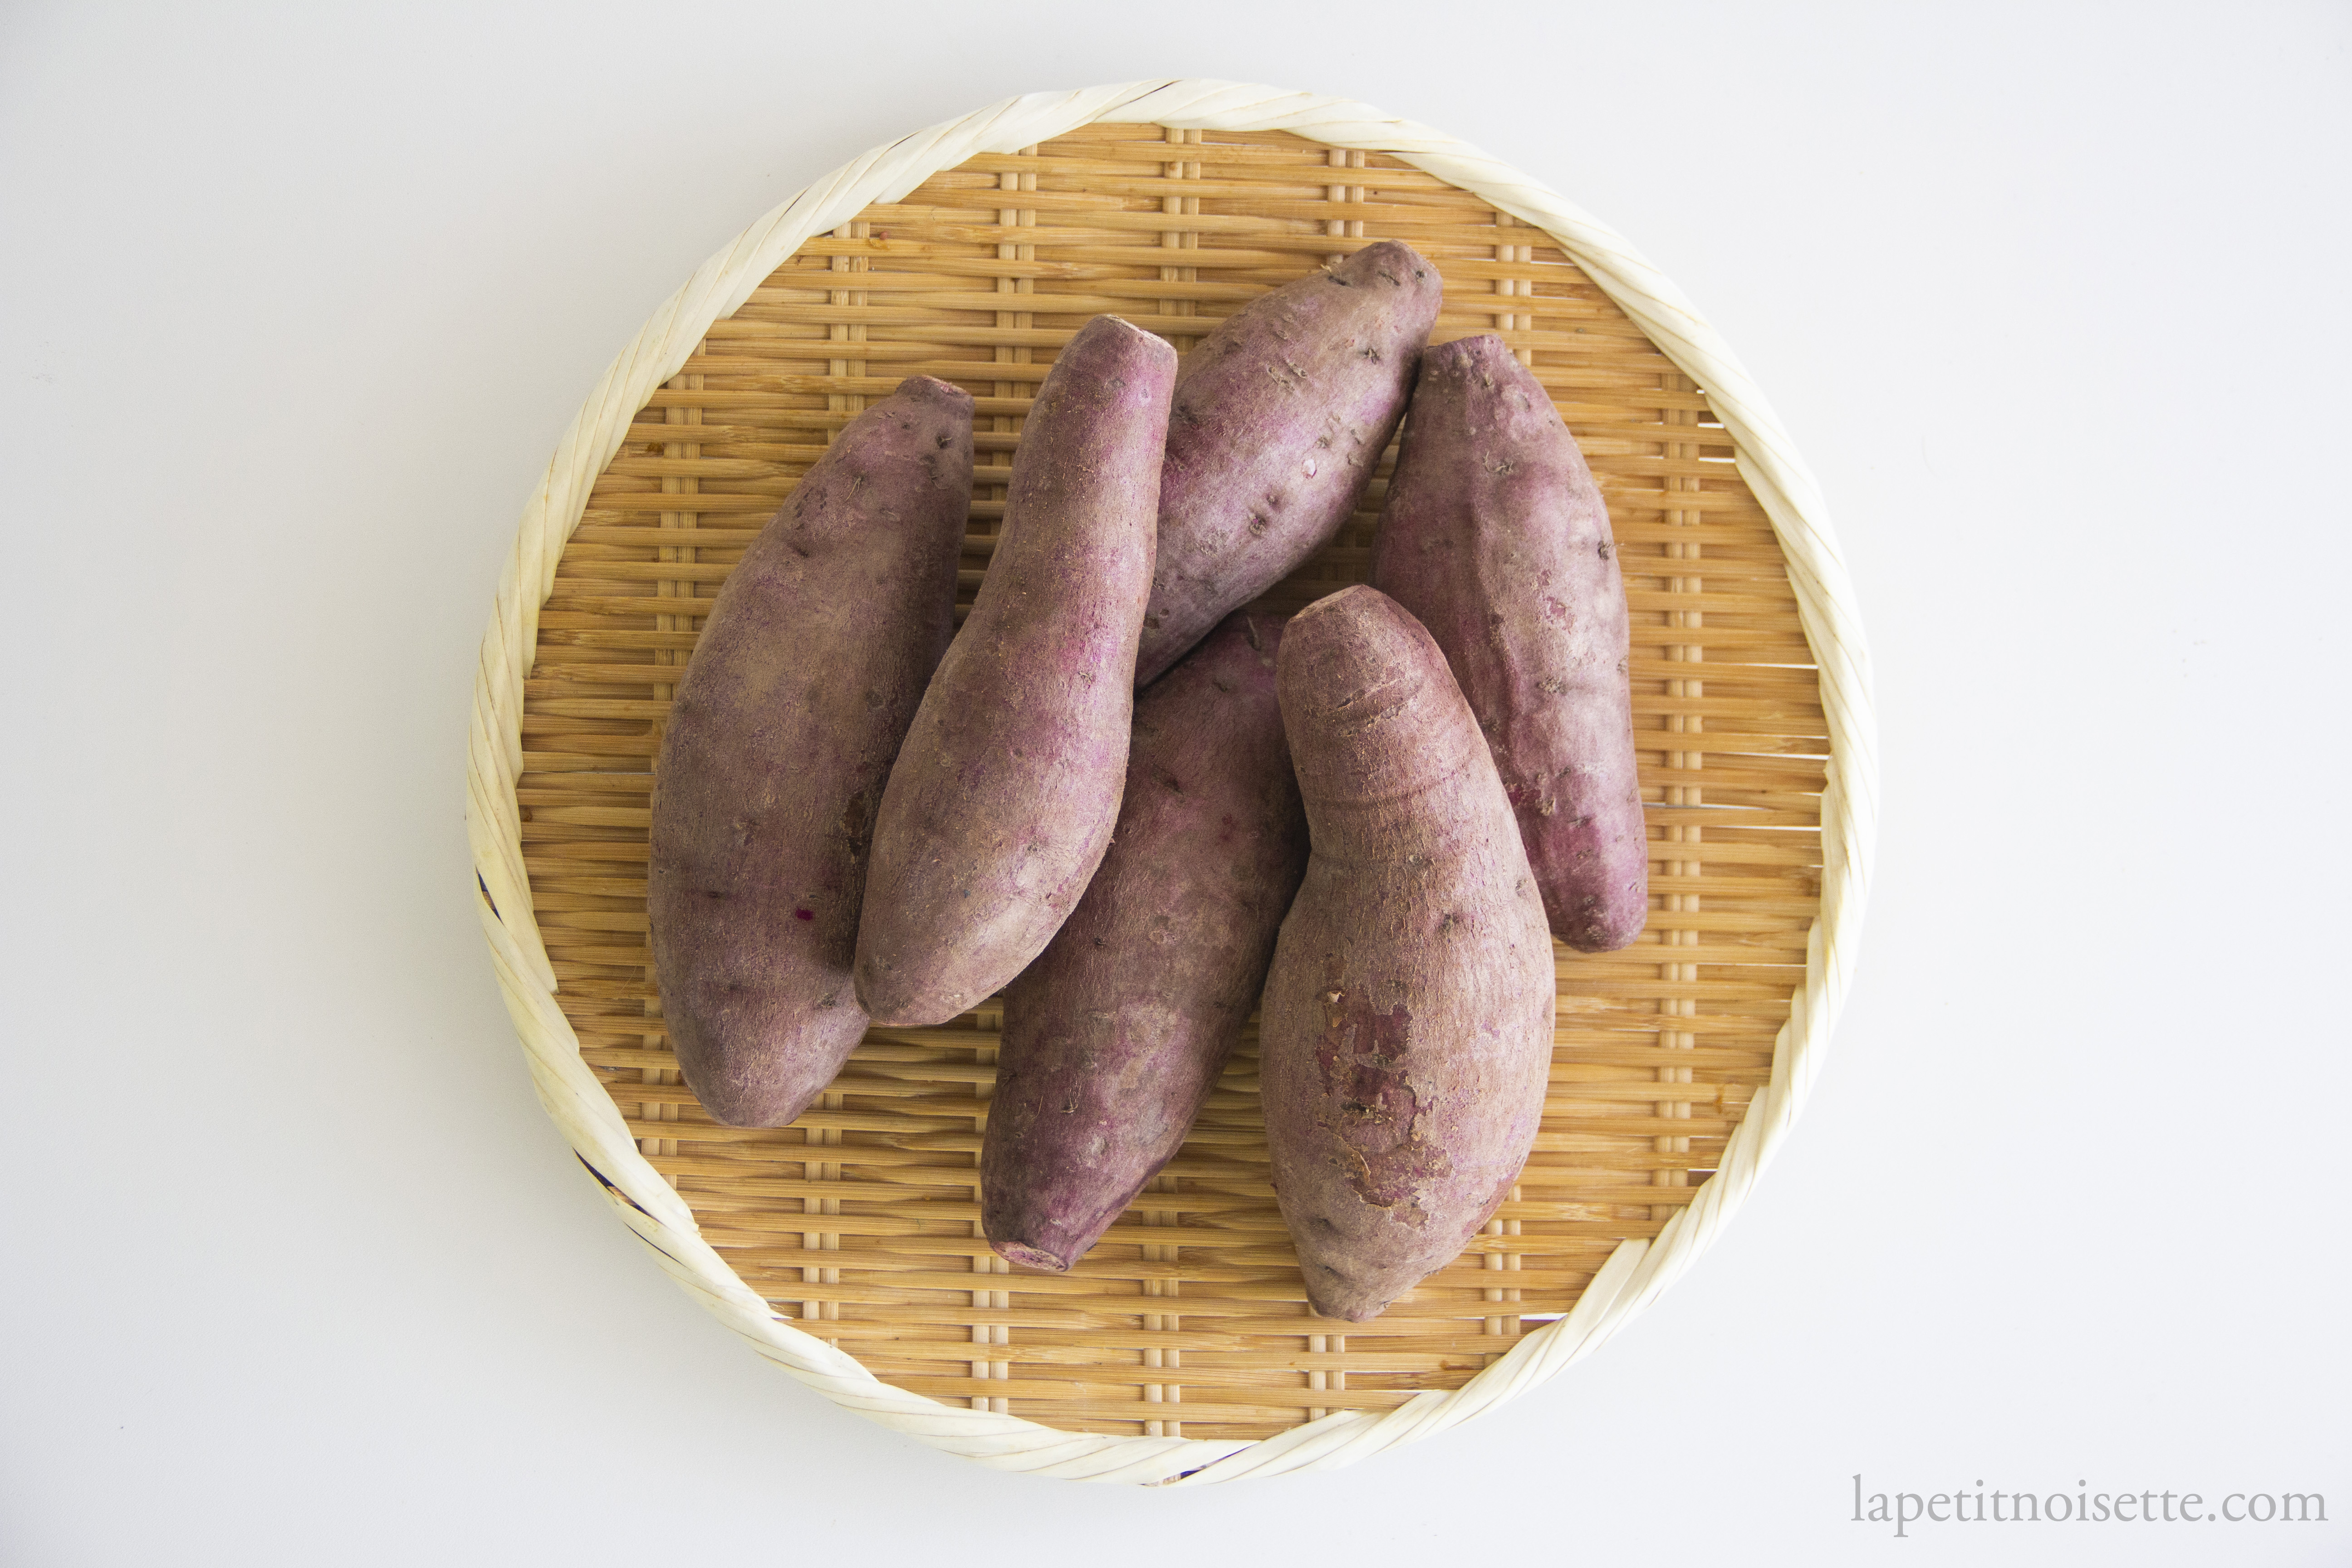 Purple Japanese sweet potato for making vinegar.